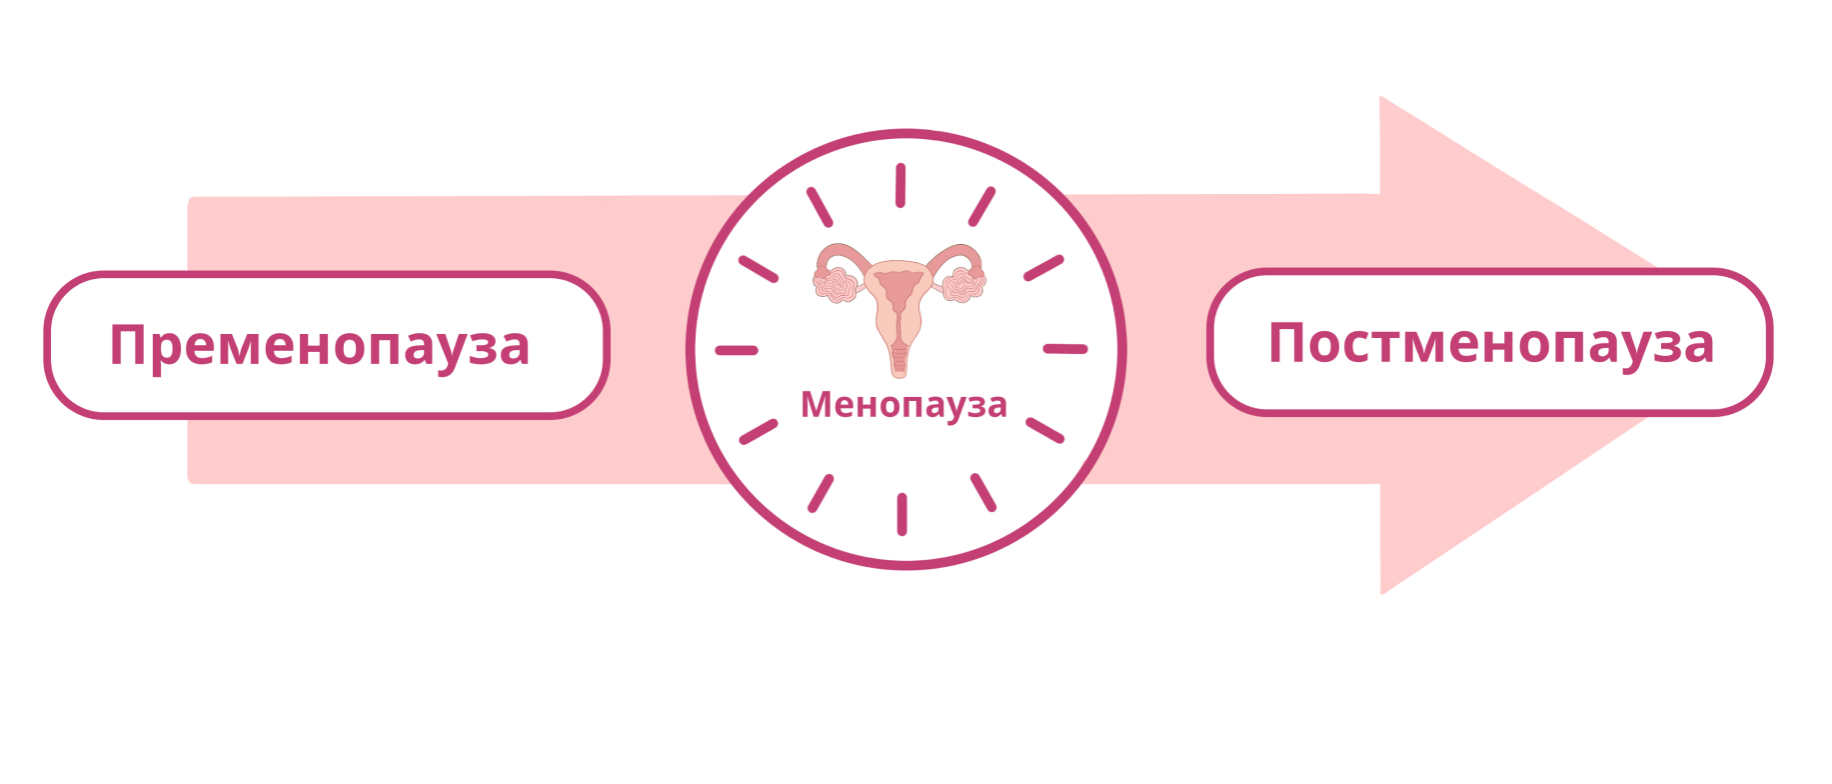 Постменопауза сколько. Этапы менопаузы. Фазы климактерического периода у женщин. Стадии климакса. Стадии кли Акса.